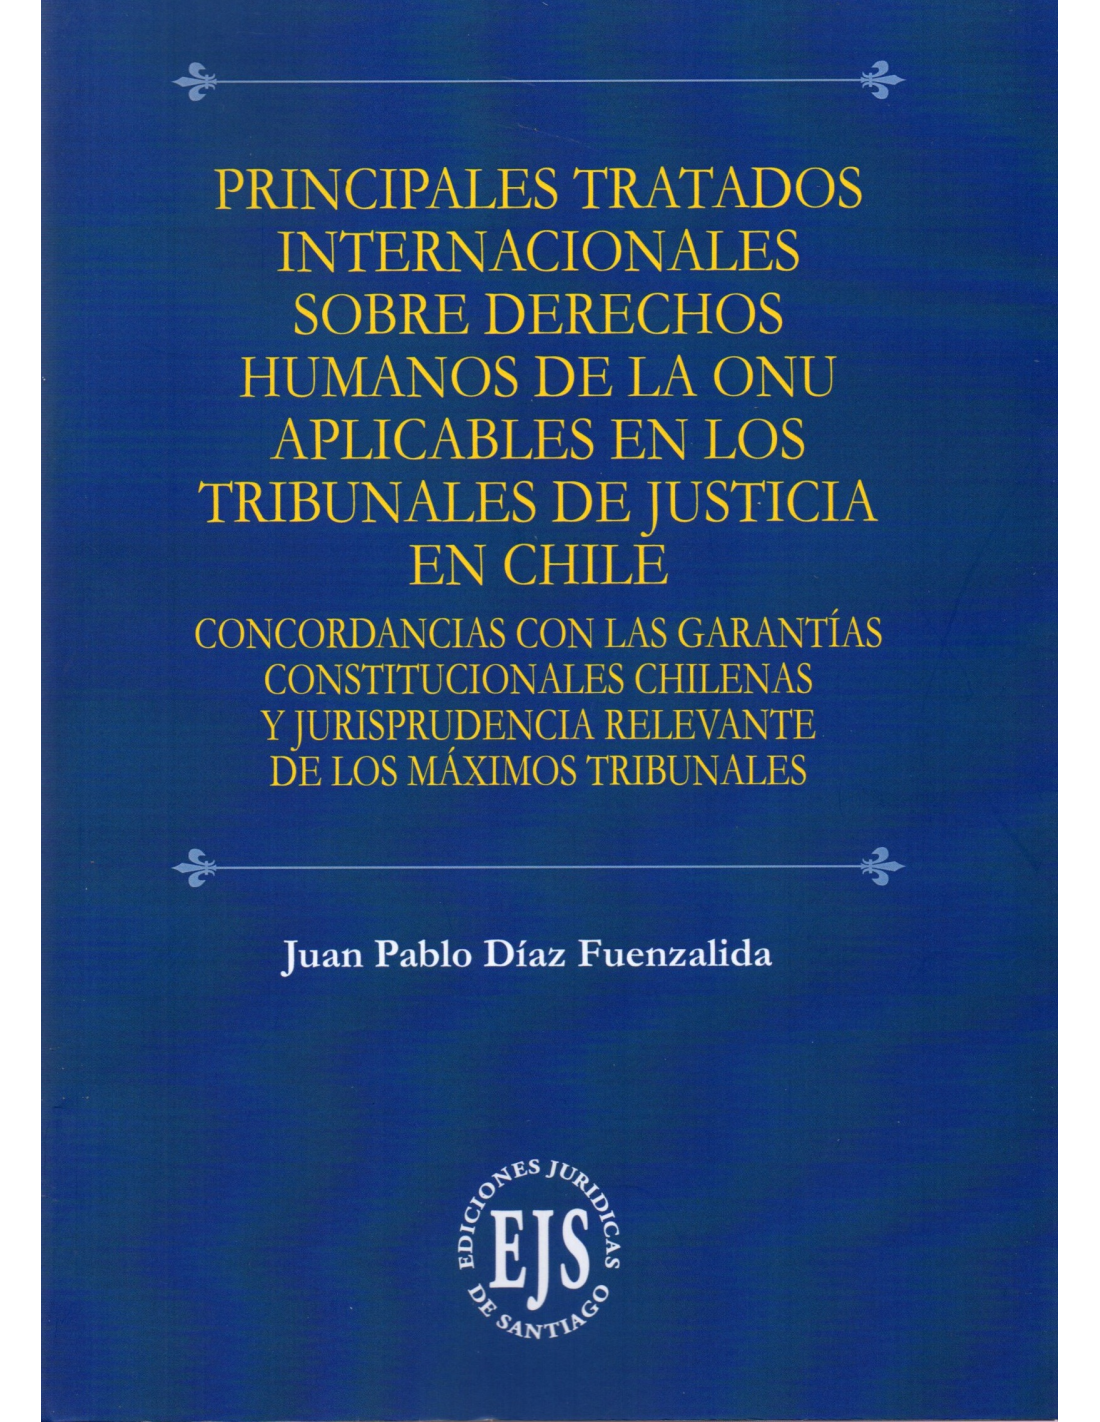 principales-tratados-internacionales-sobre-derechos-humanos-de-la-onu-aplicables-en-los-tribunales-de-justicia-en-chile.jpg